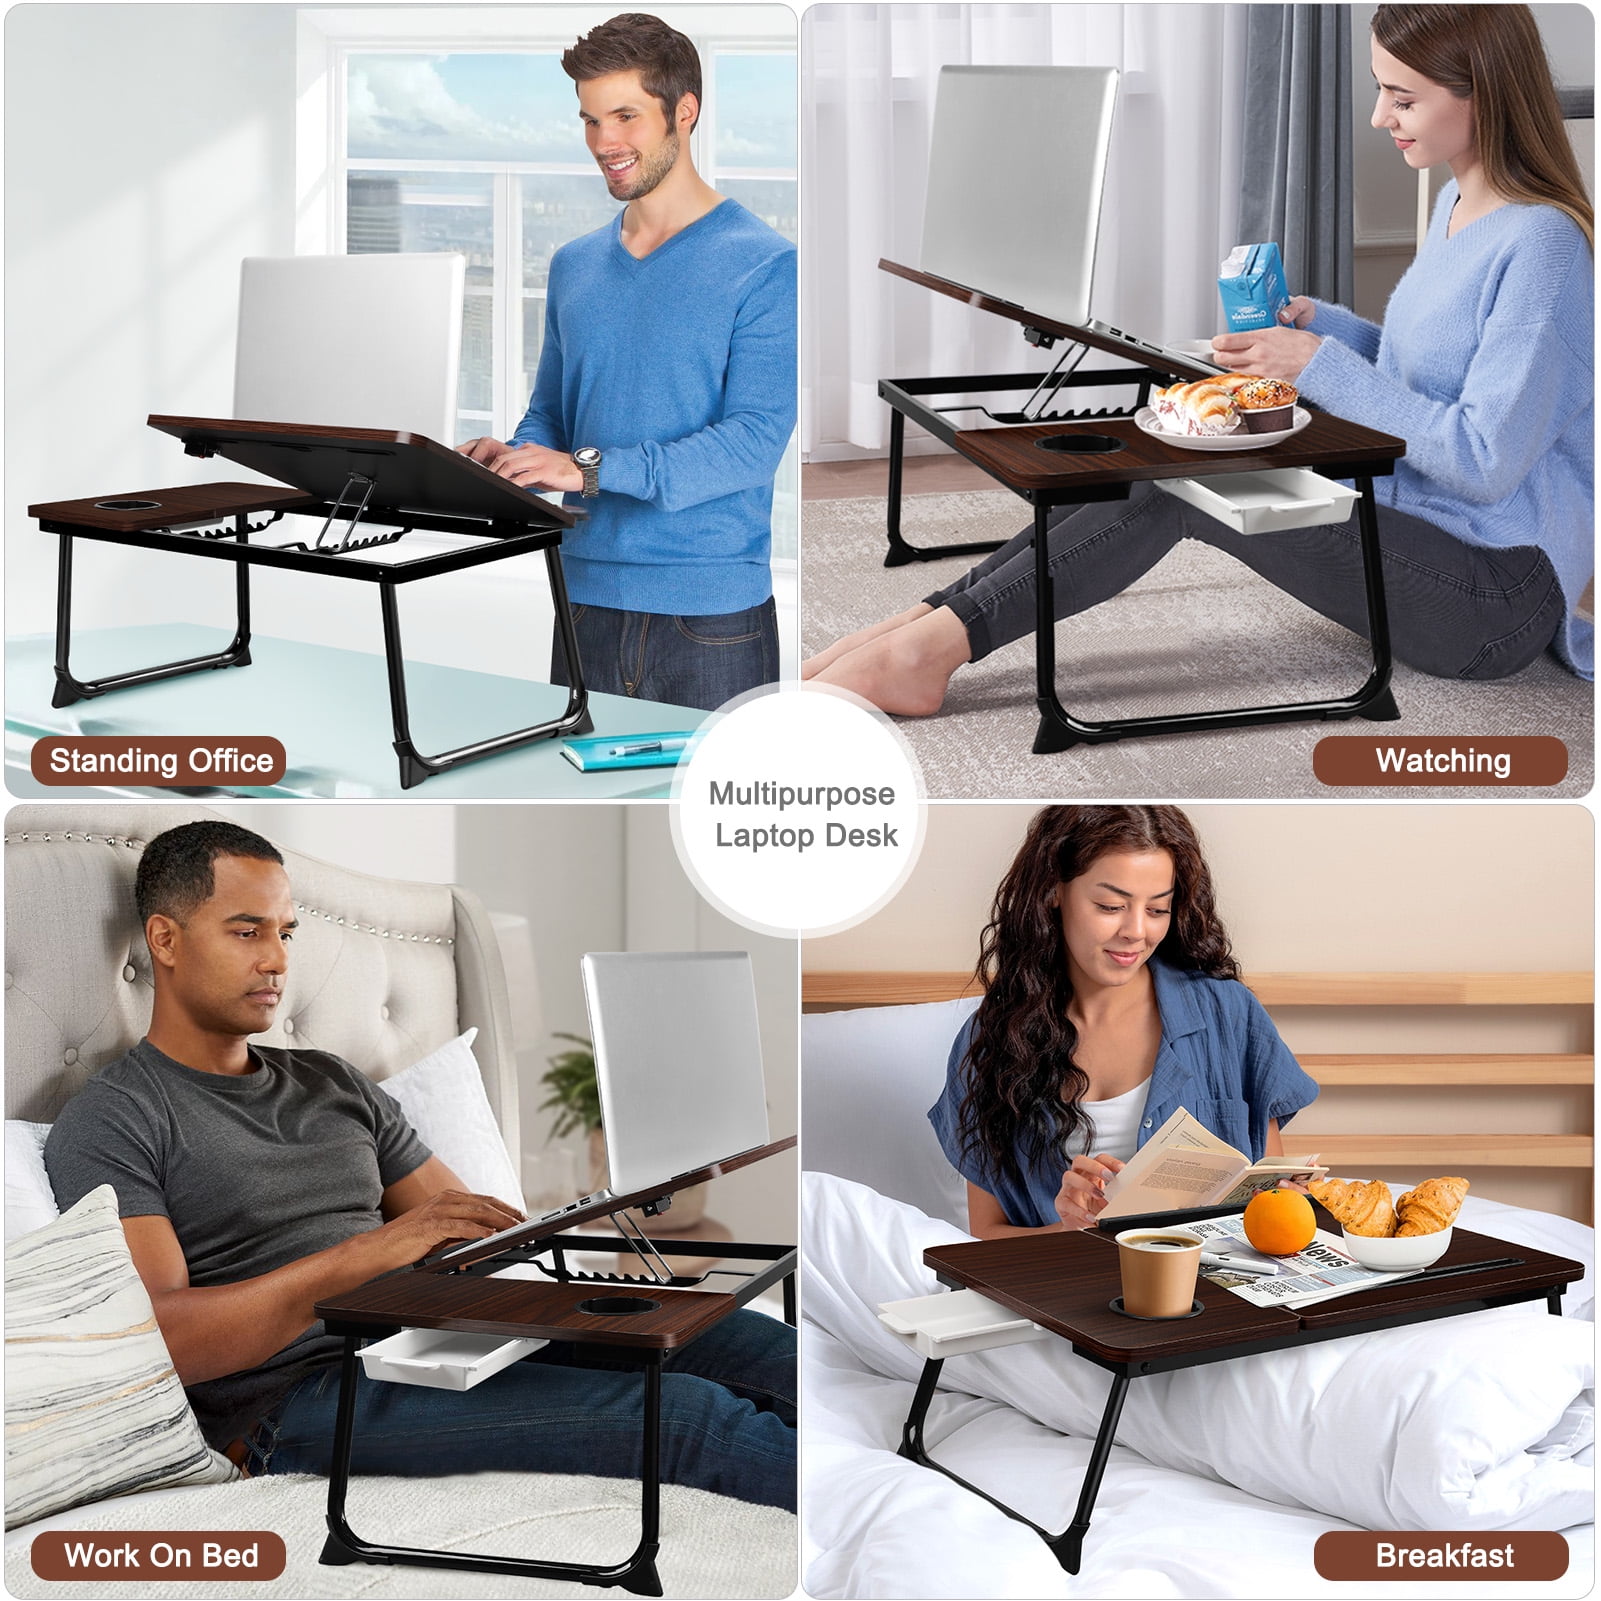 Livhil Large Lap Desk for Bed | Laptop Table, Portable Lap Desk, Home Office Room Laptop Desk for Bed Table Floor Table, Floor Desk for Adults (Black)